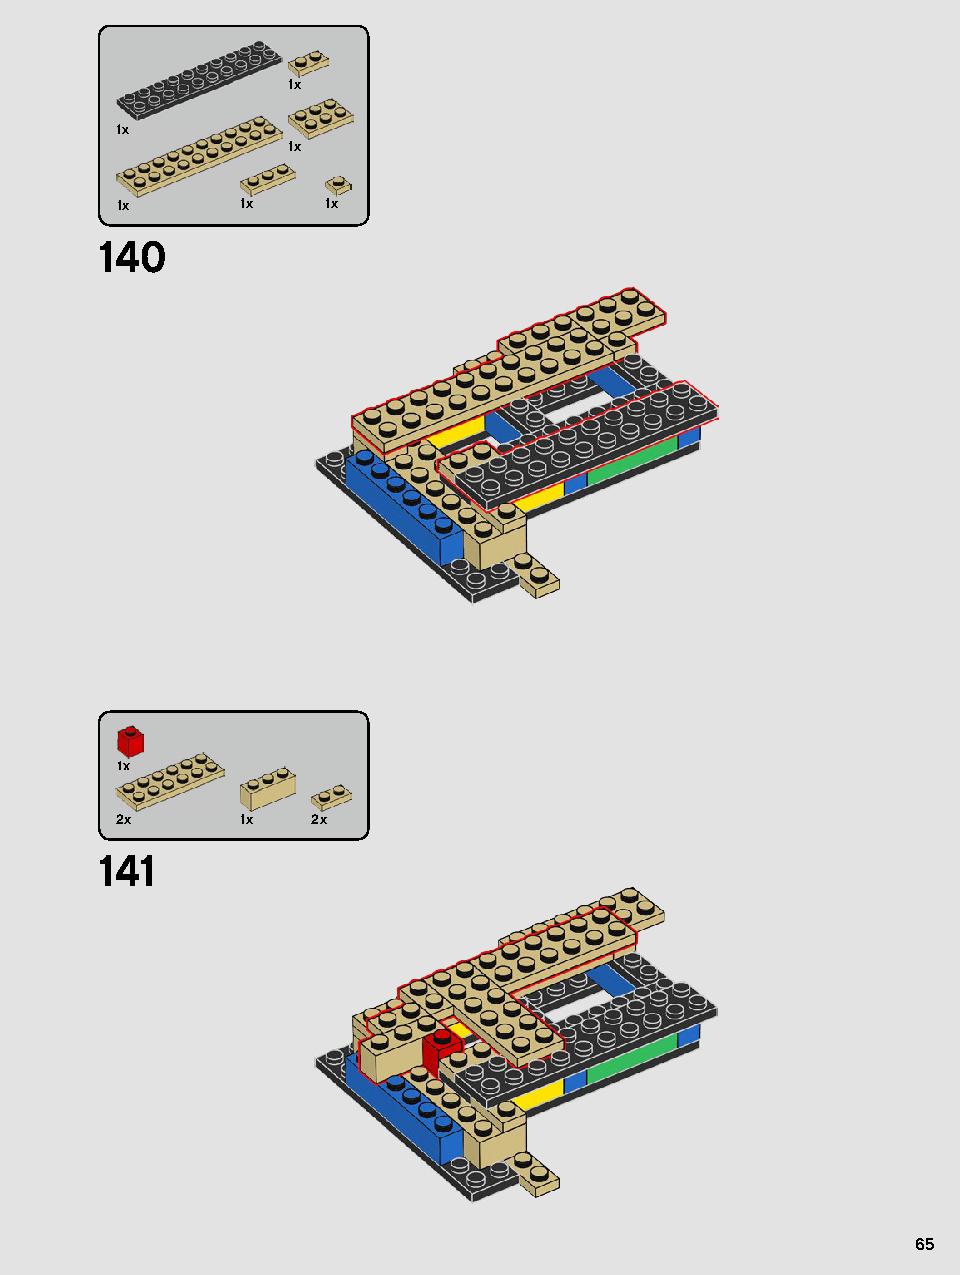 ヨーダ™ 75255 レゴの商品情報 レゴの説明書・組立方法 65 page